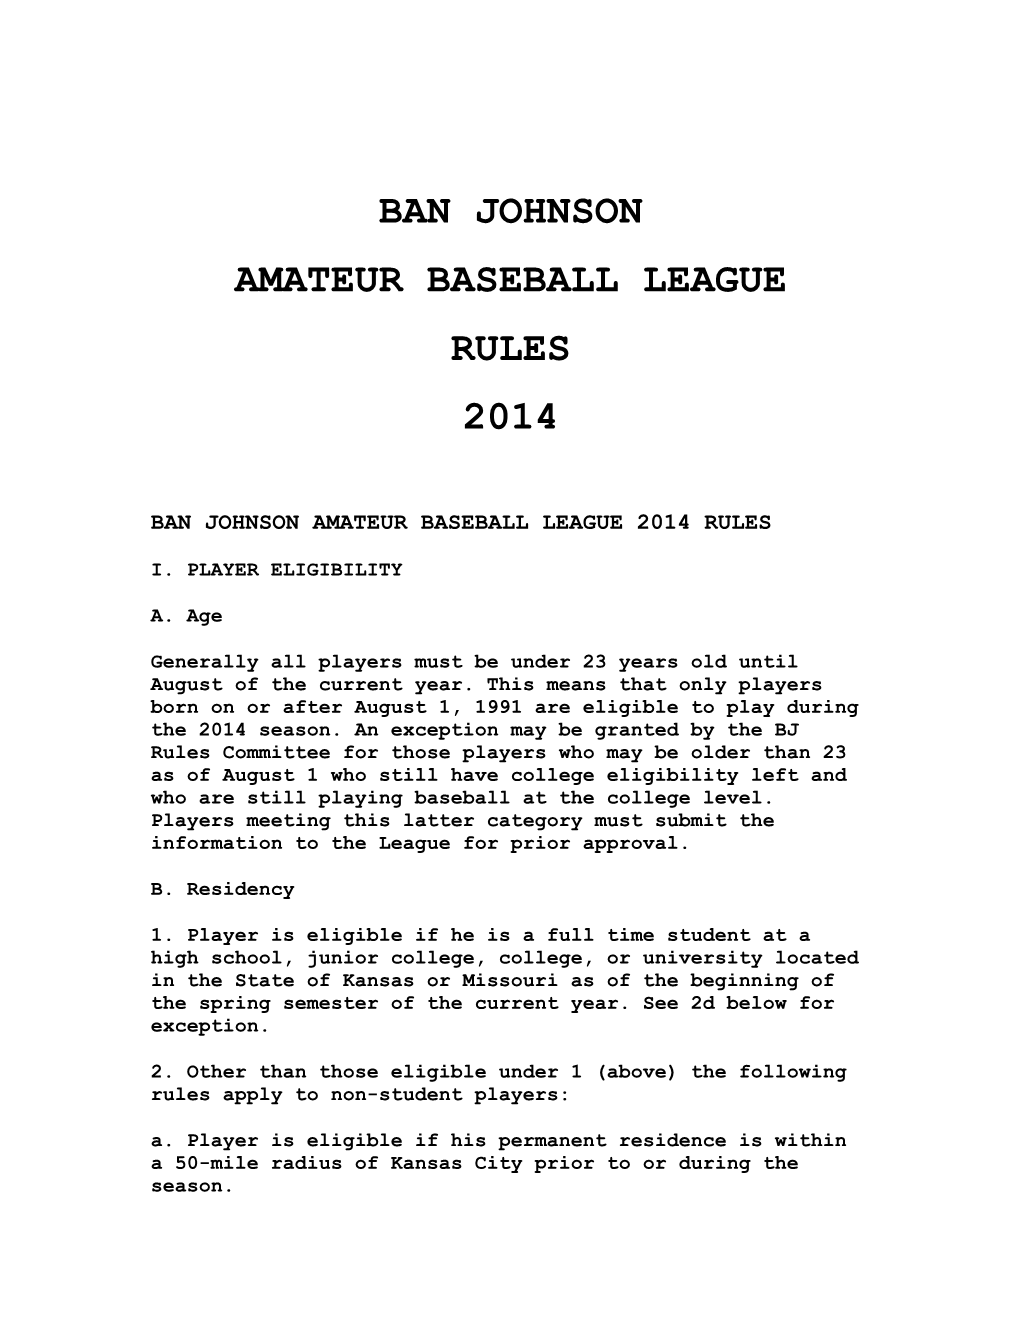 Ban Johnson Amateur Baseball League